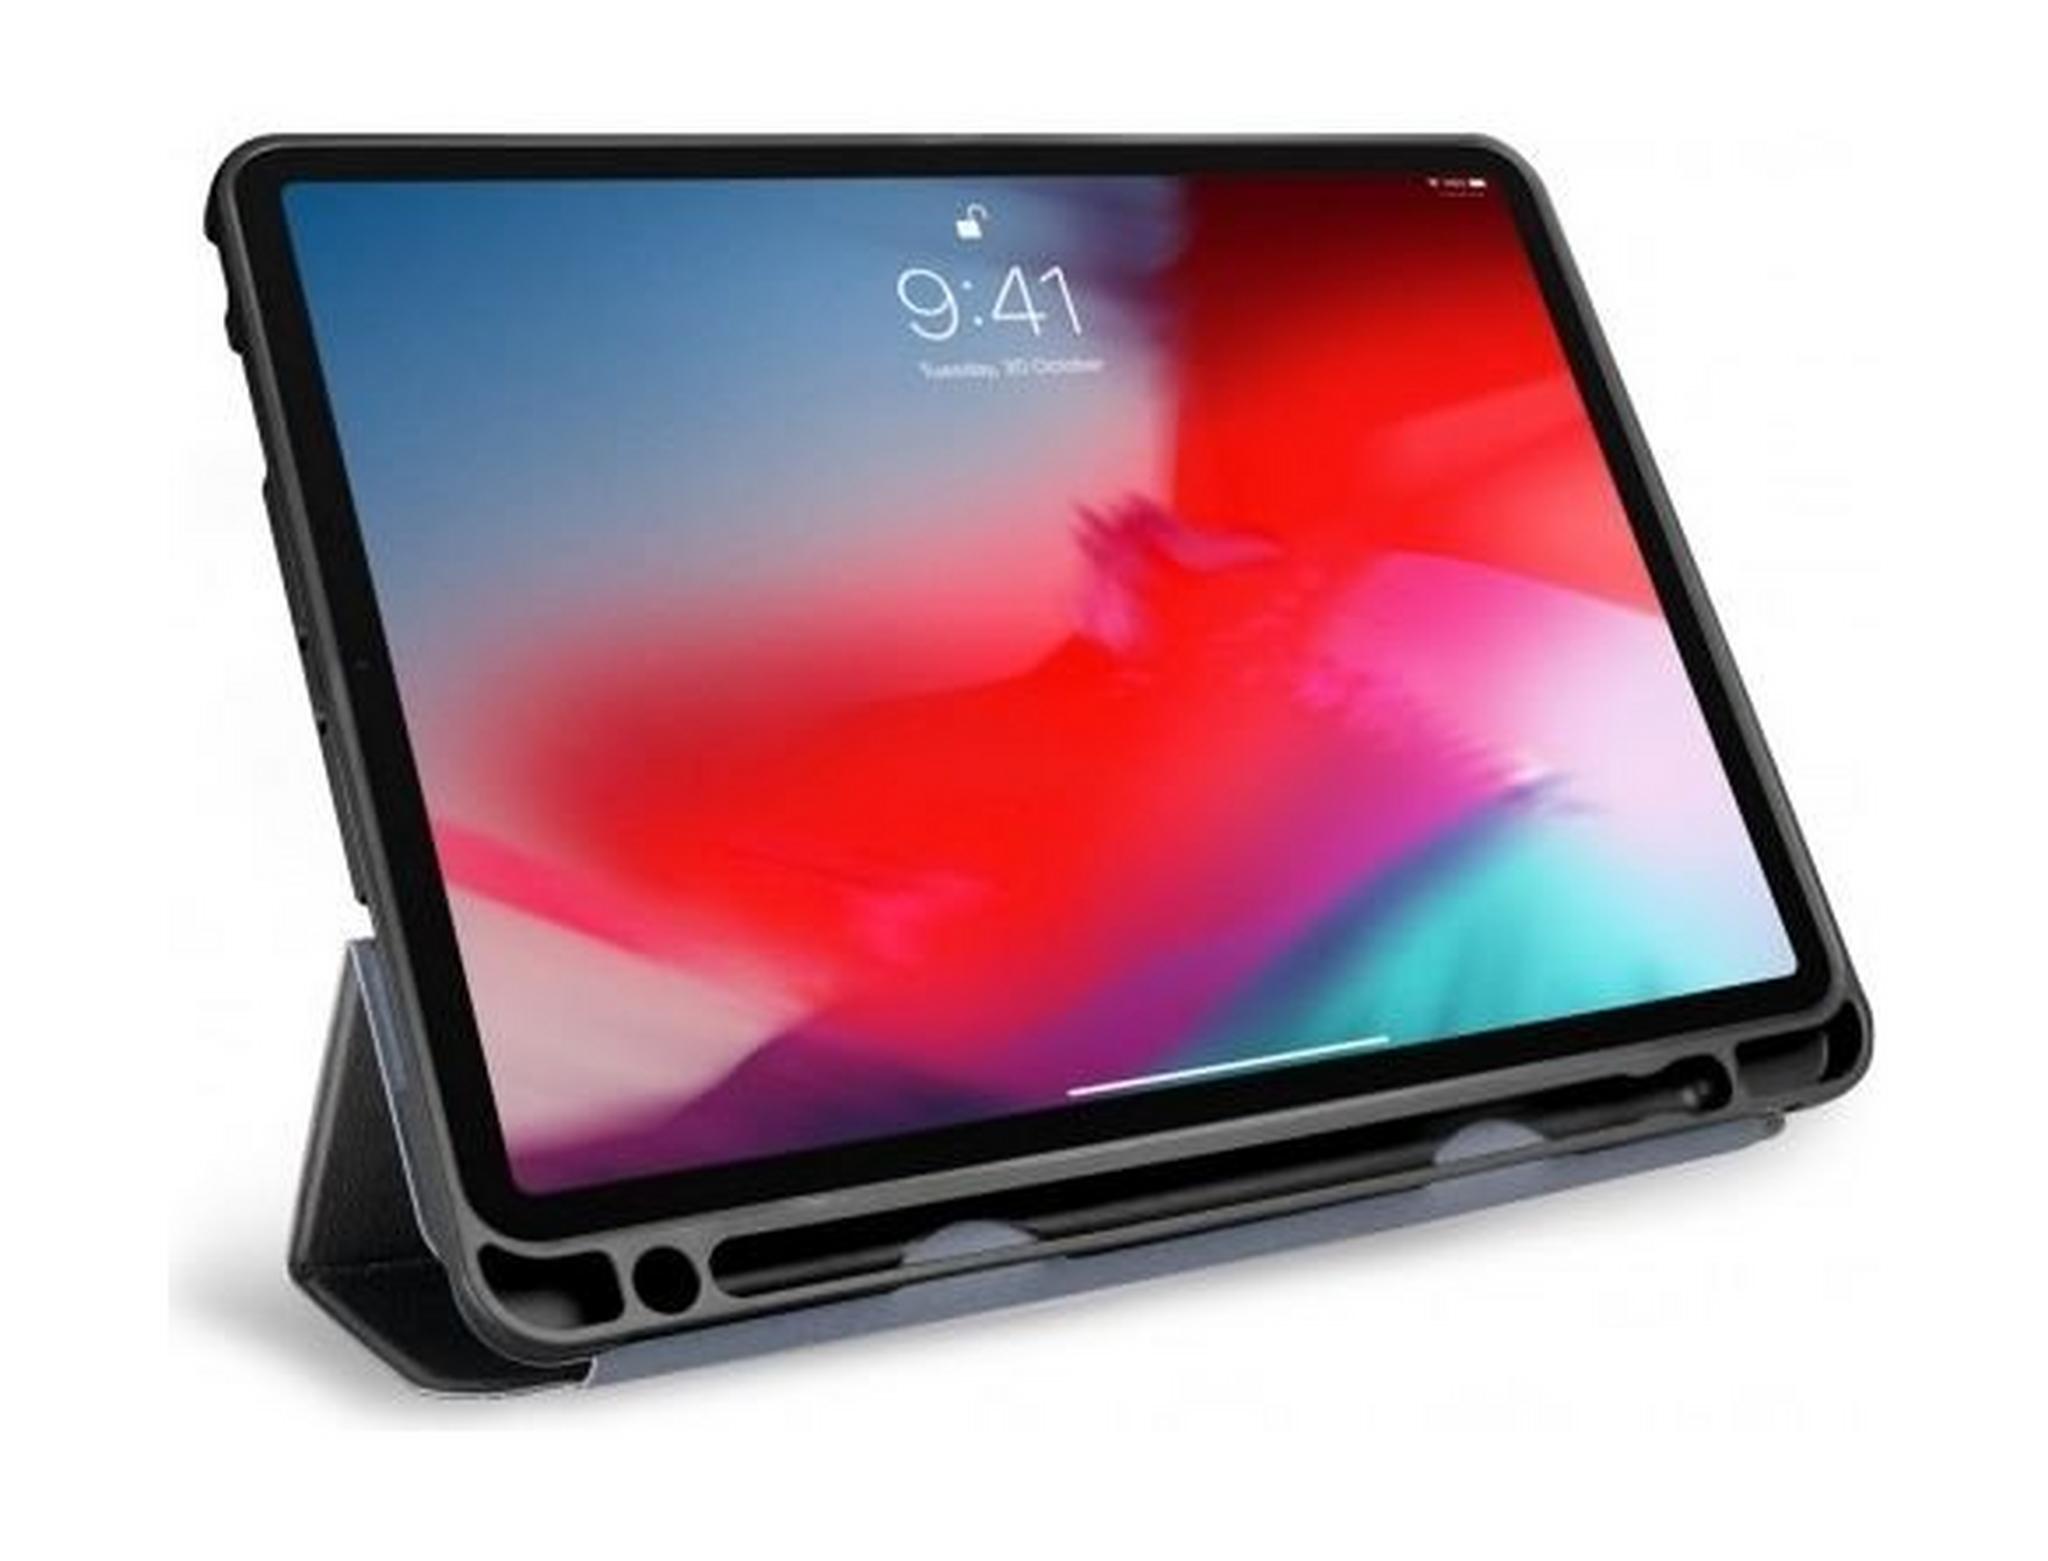 Odoyo AirCoat Protective Case iPad Pro 12.9-inch (PA5229) - Black